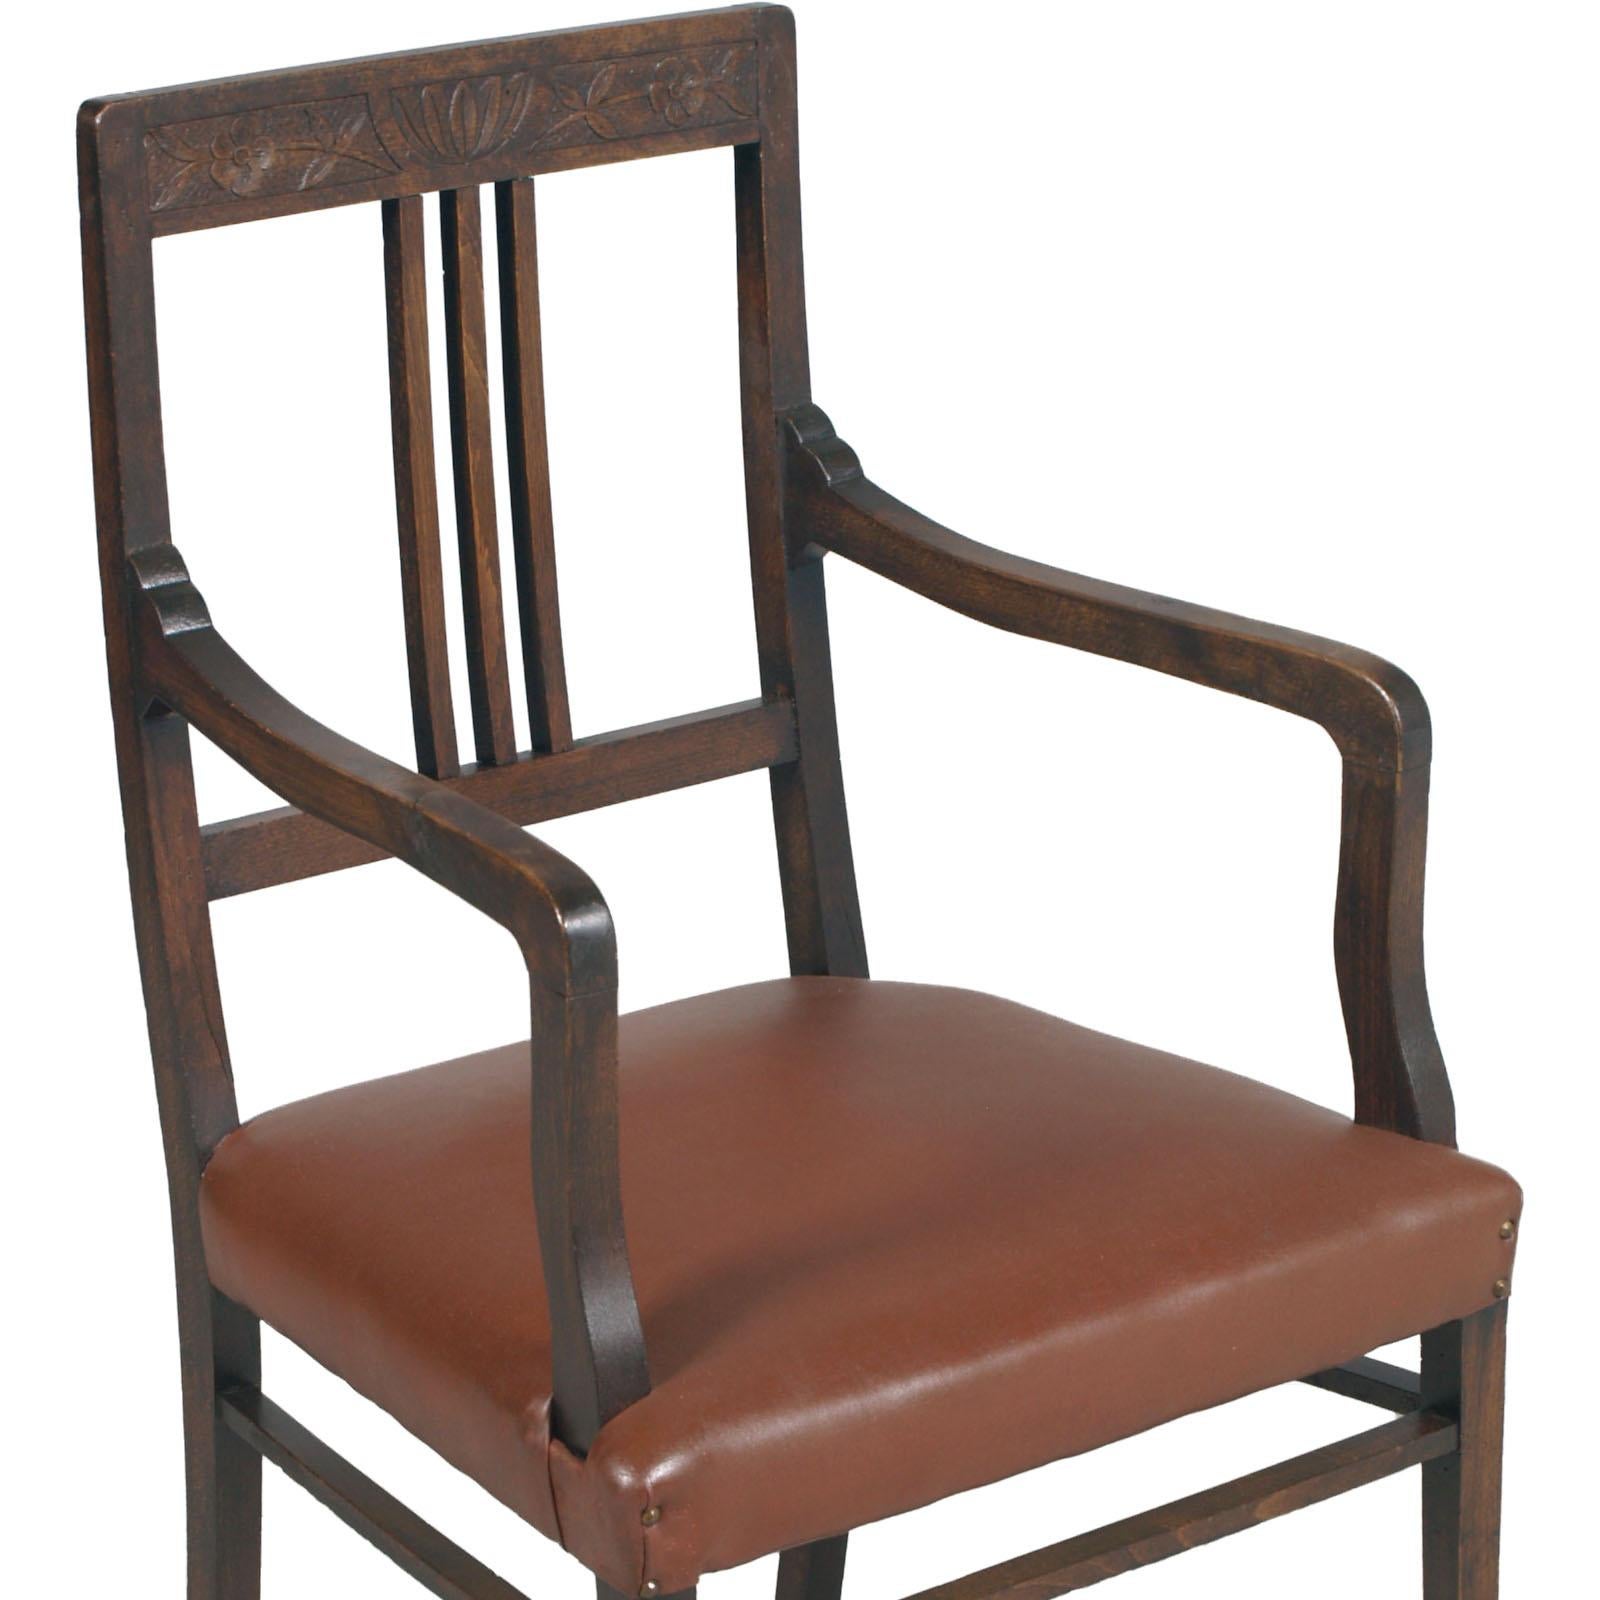 Schöne und raffinierte provenzalische Sessel aus dem späten 19. Jahrhundert, Jugendstil, handgeschnitztes Nussbaumholz, restauriert und mit Wachs poliert.

Maße cm: H 46/99, B 52, T 52.